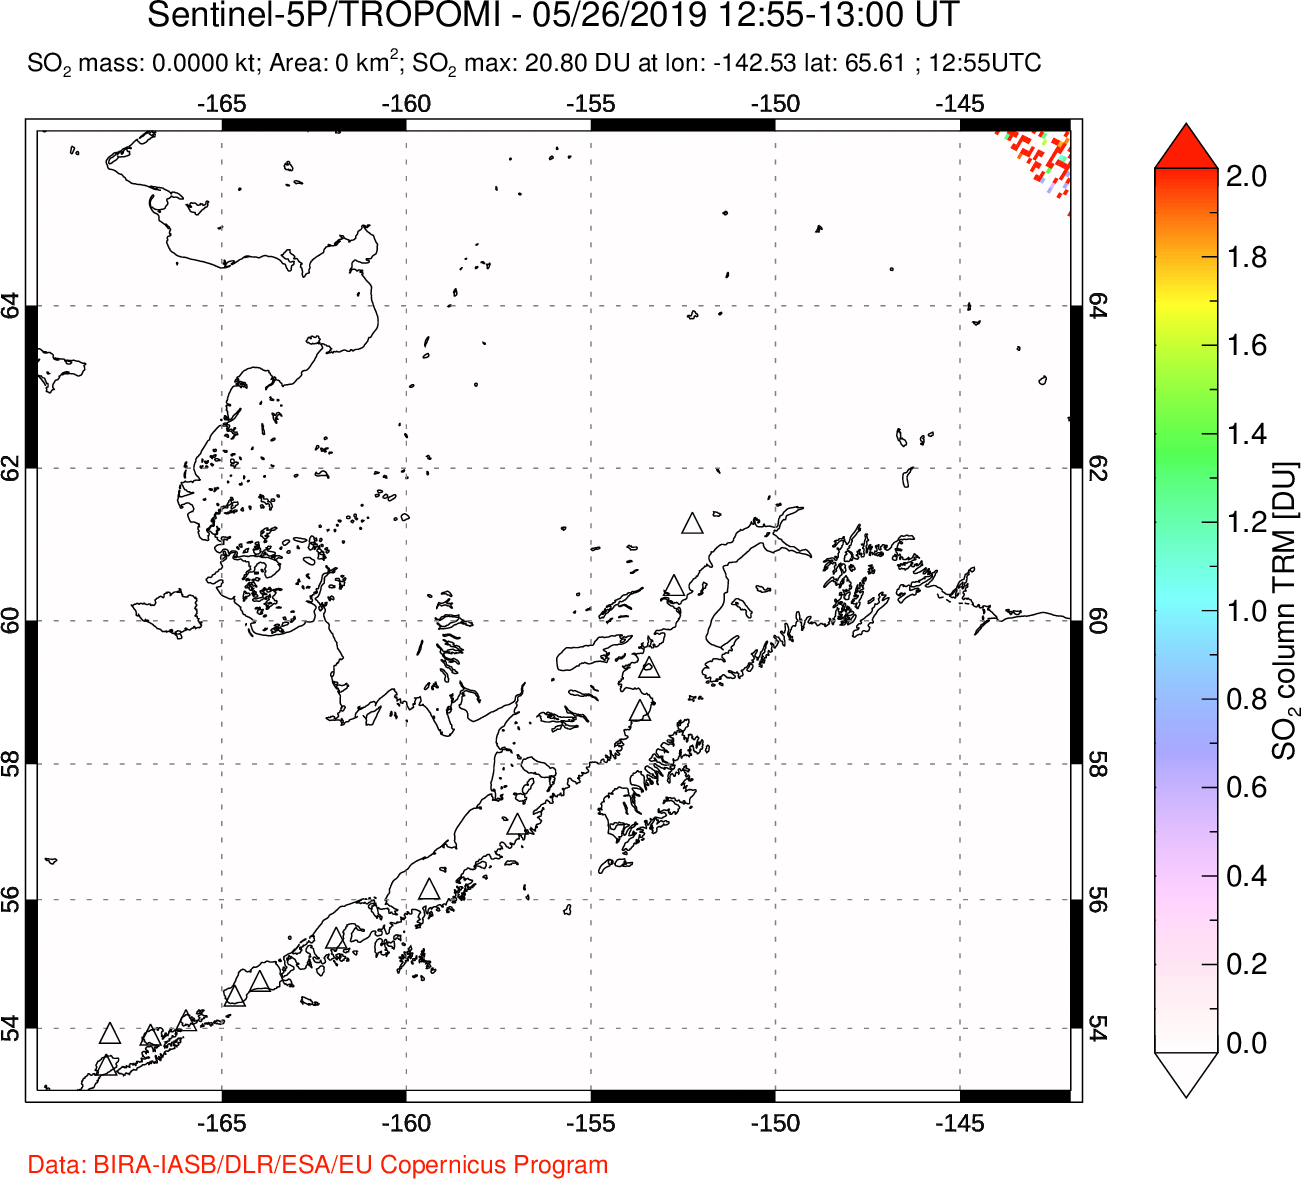 A sulfur dioxide image over Alaska, USA on May 26, 2019.